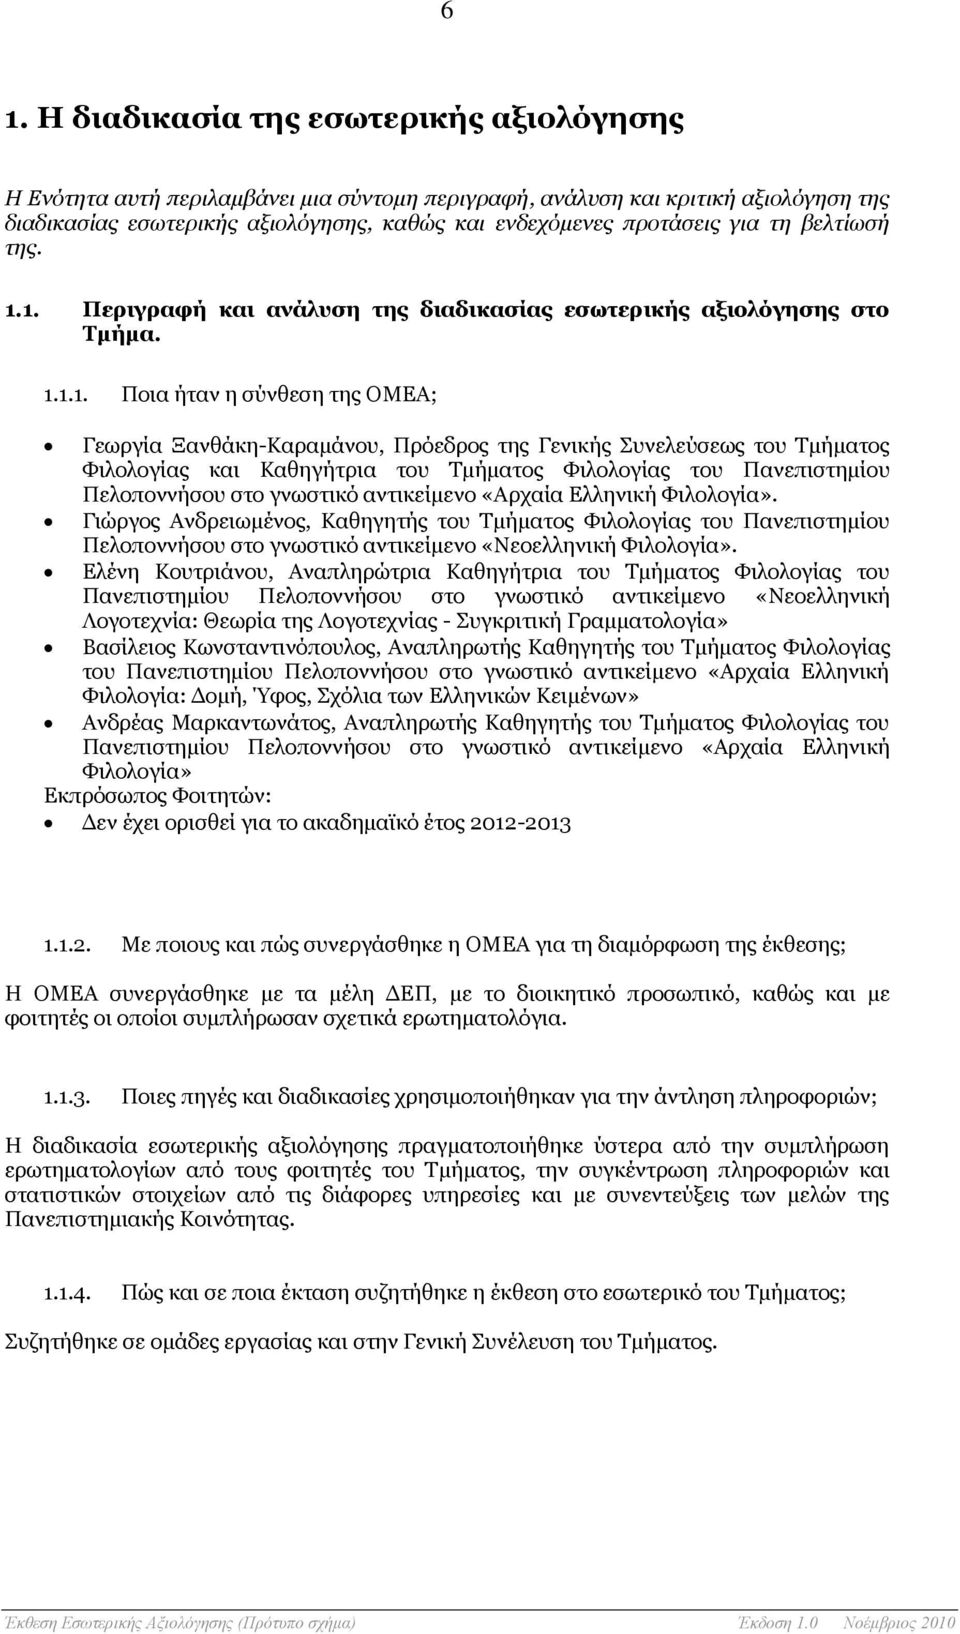 1. Περιγραφή και ανάλυση της διαδικασίας εσωτερικής αξιολόγησης στο Τμήμα. 1.1.1. Ποια ήταν η σύνθεση της ΟΜΕΑ; Γεωργία Ξανθάκη-Καραμάνου, Πρόεδρος της Γενικής Συνελεύσεως του Τμήματος Φιλολογίας και